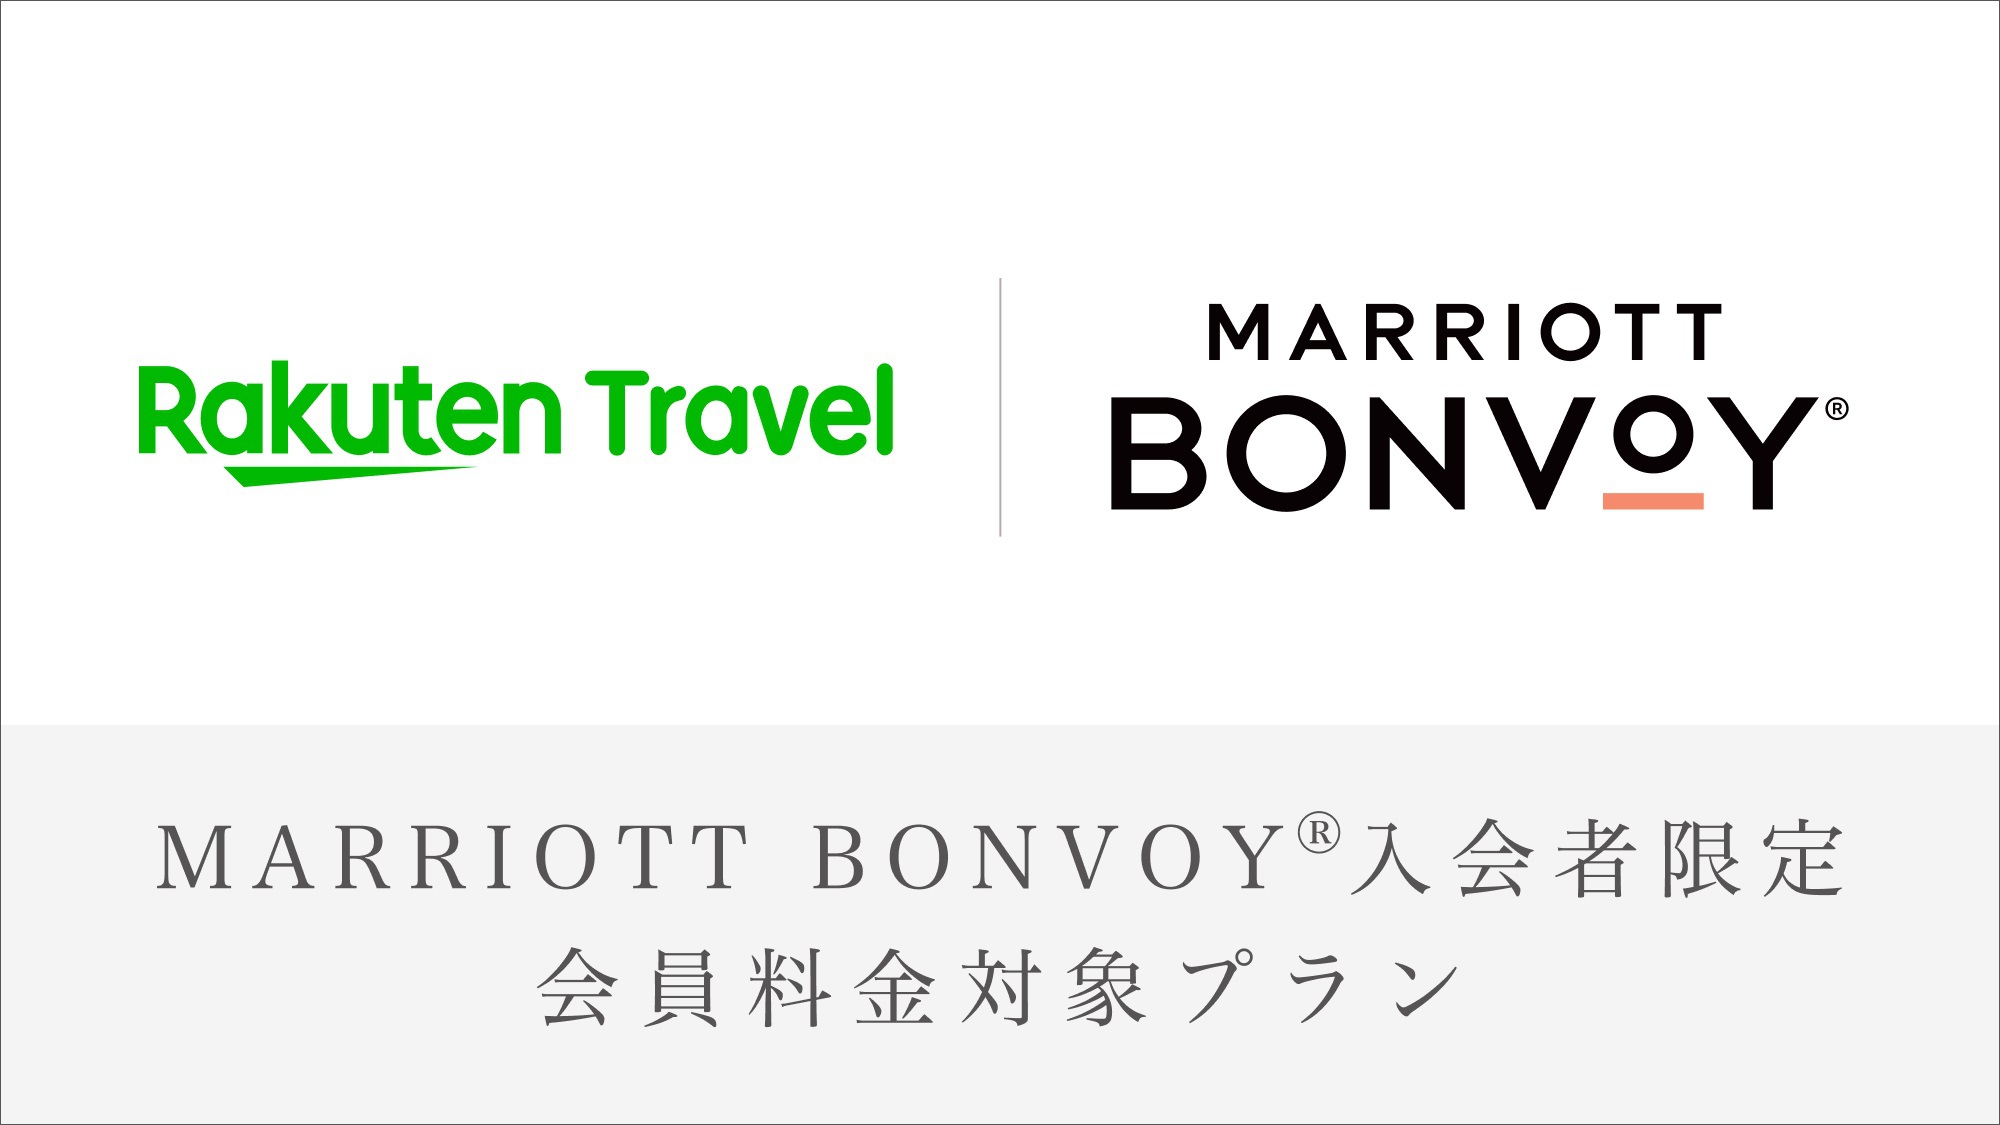 【Marriott Bonvoy会員価格対象プラン】シェラトンクラブフロア・ラウンジ利用可・高層階